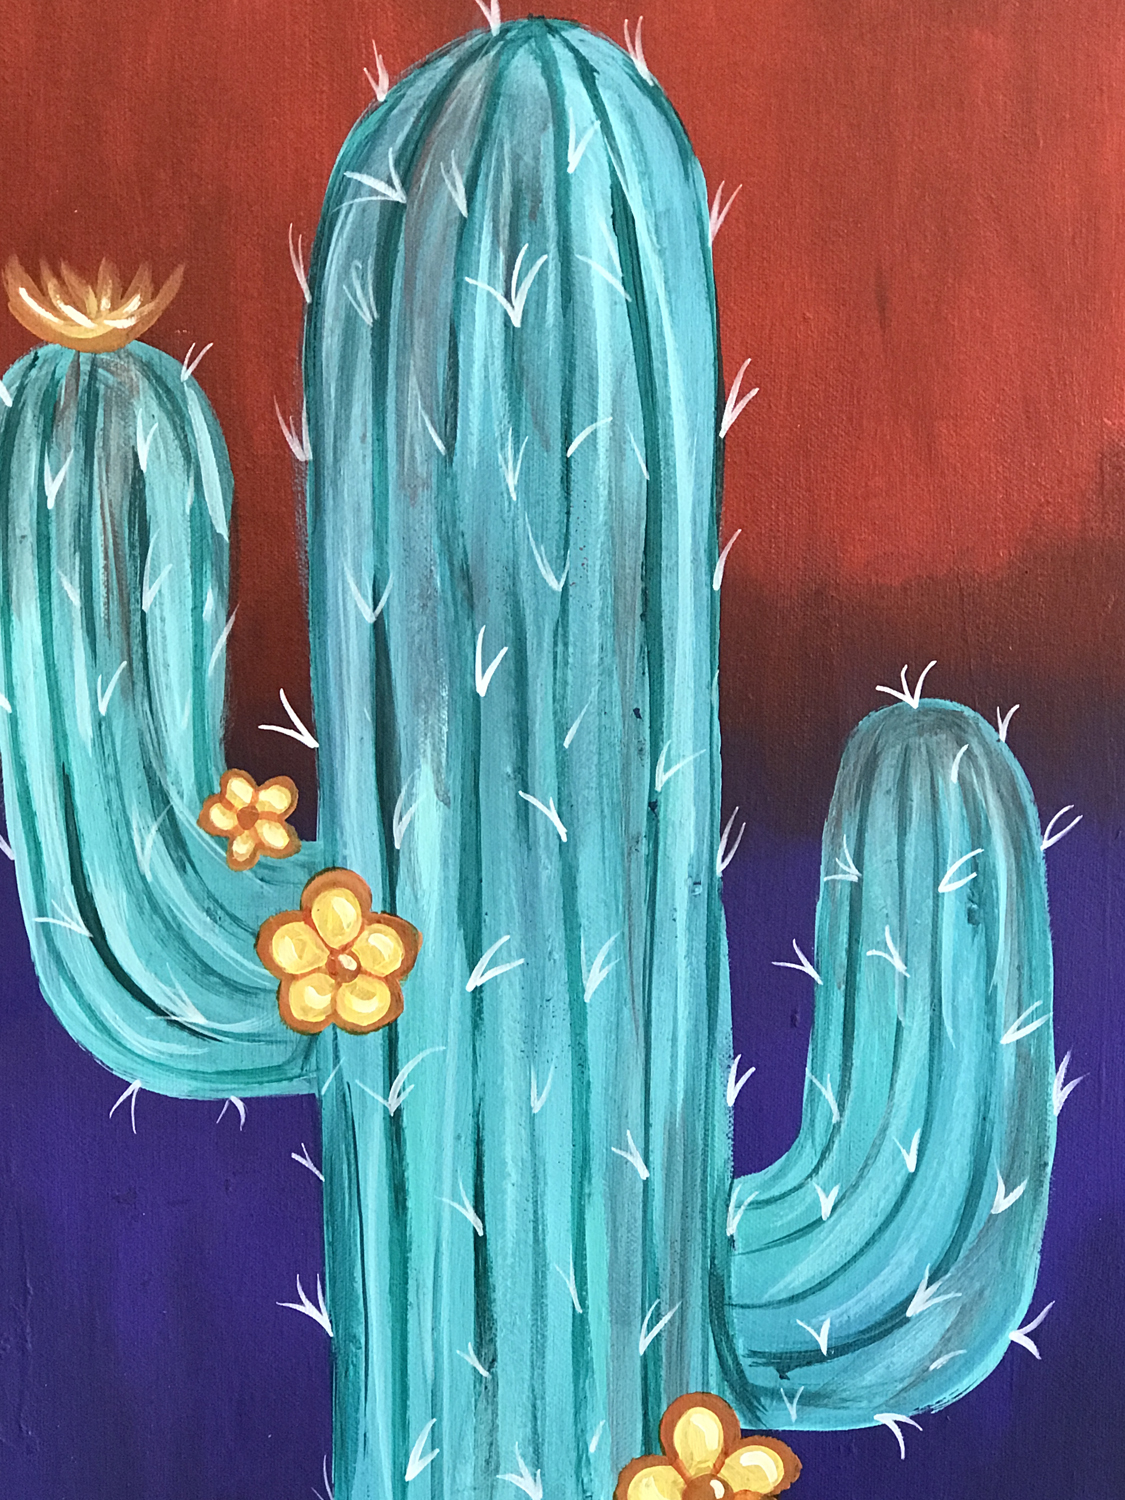 In Studio – Saguaro Cactus